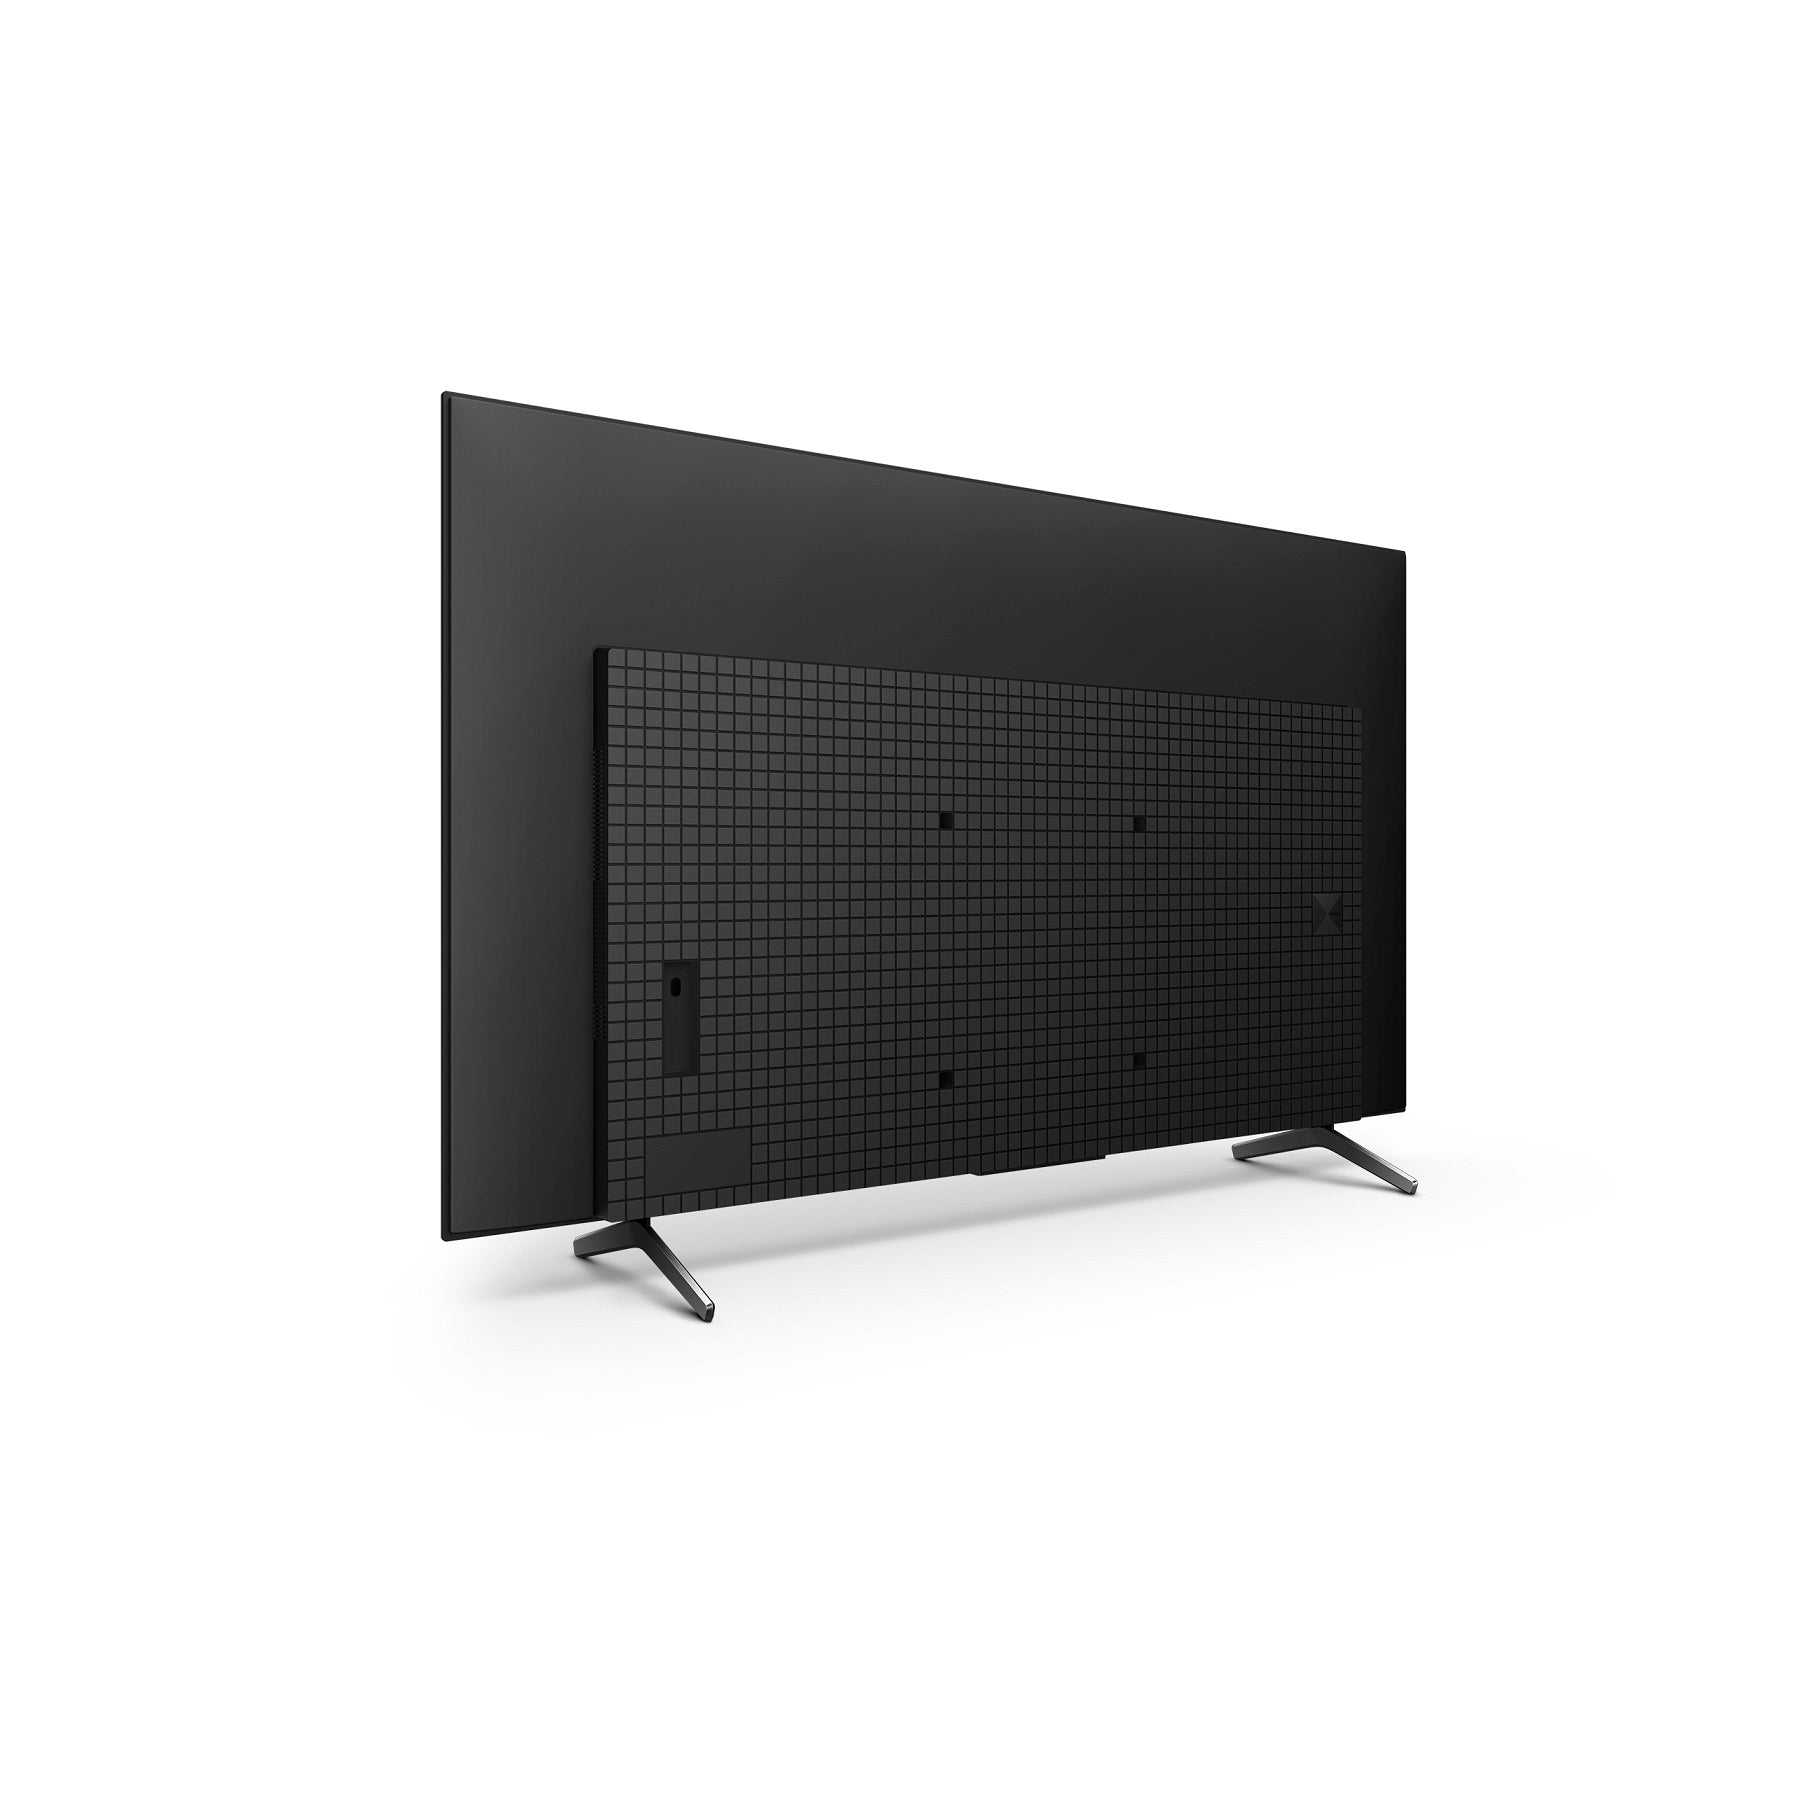 טלוויזיה 55 אינץ A75K | BRAVIA XR | OLED | 4K Ultra HD | HDR | Smart TV